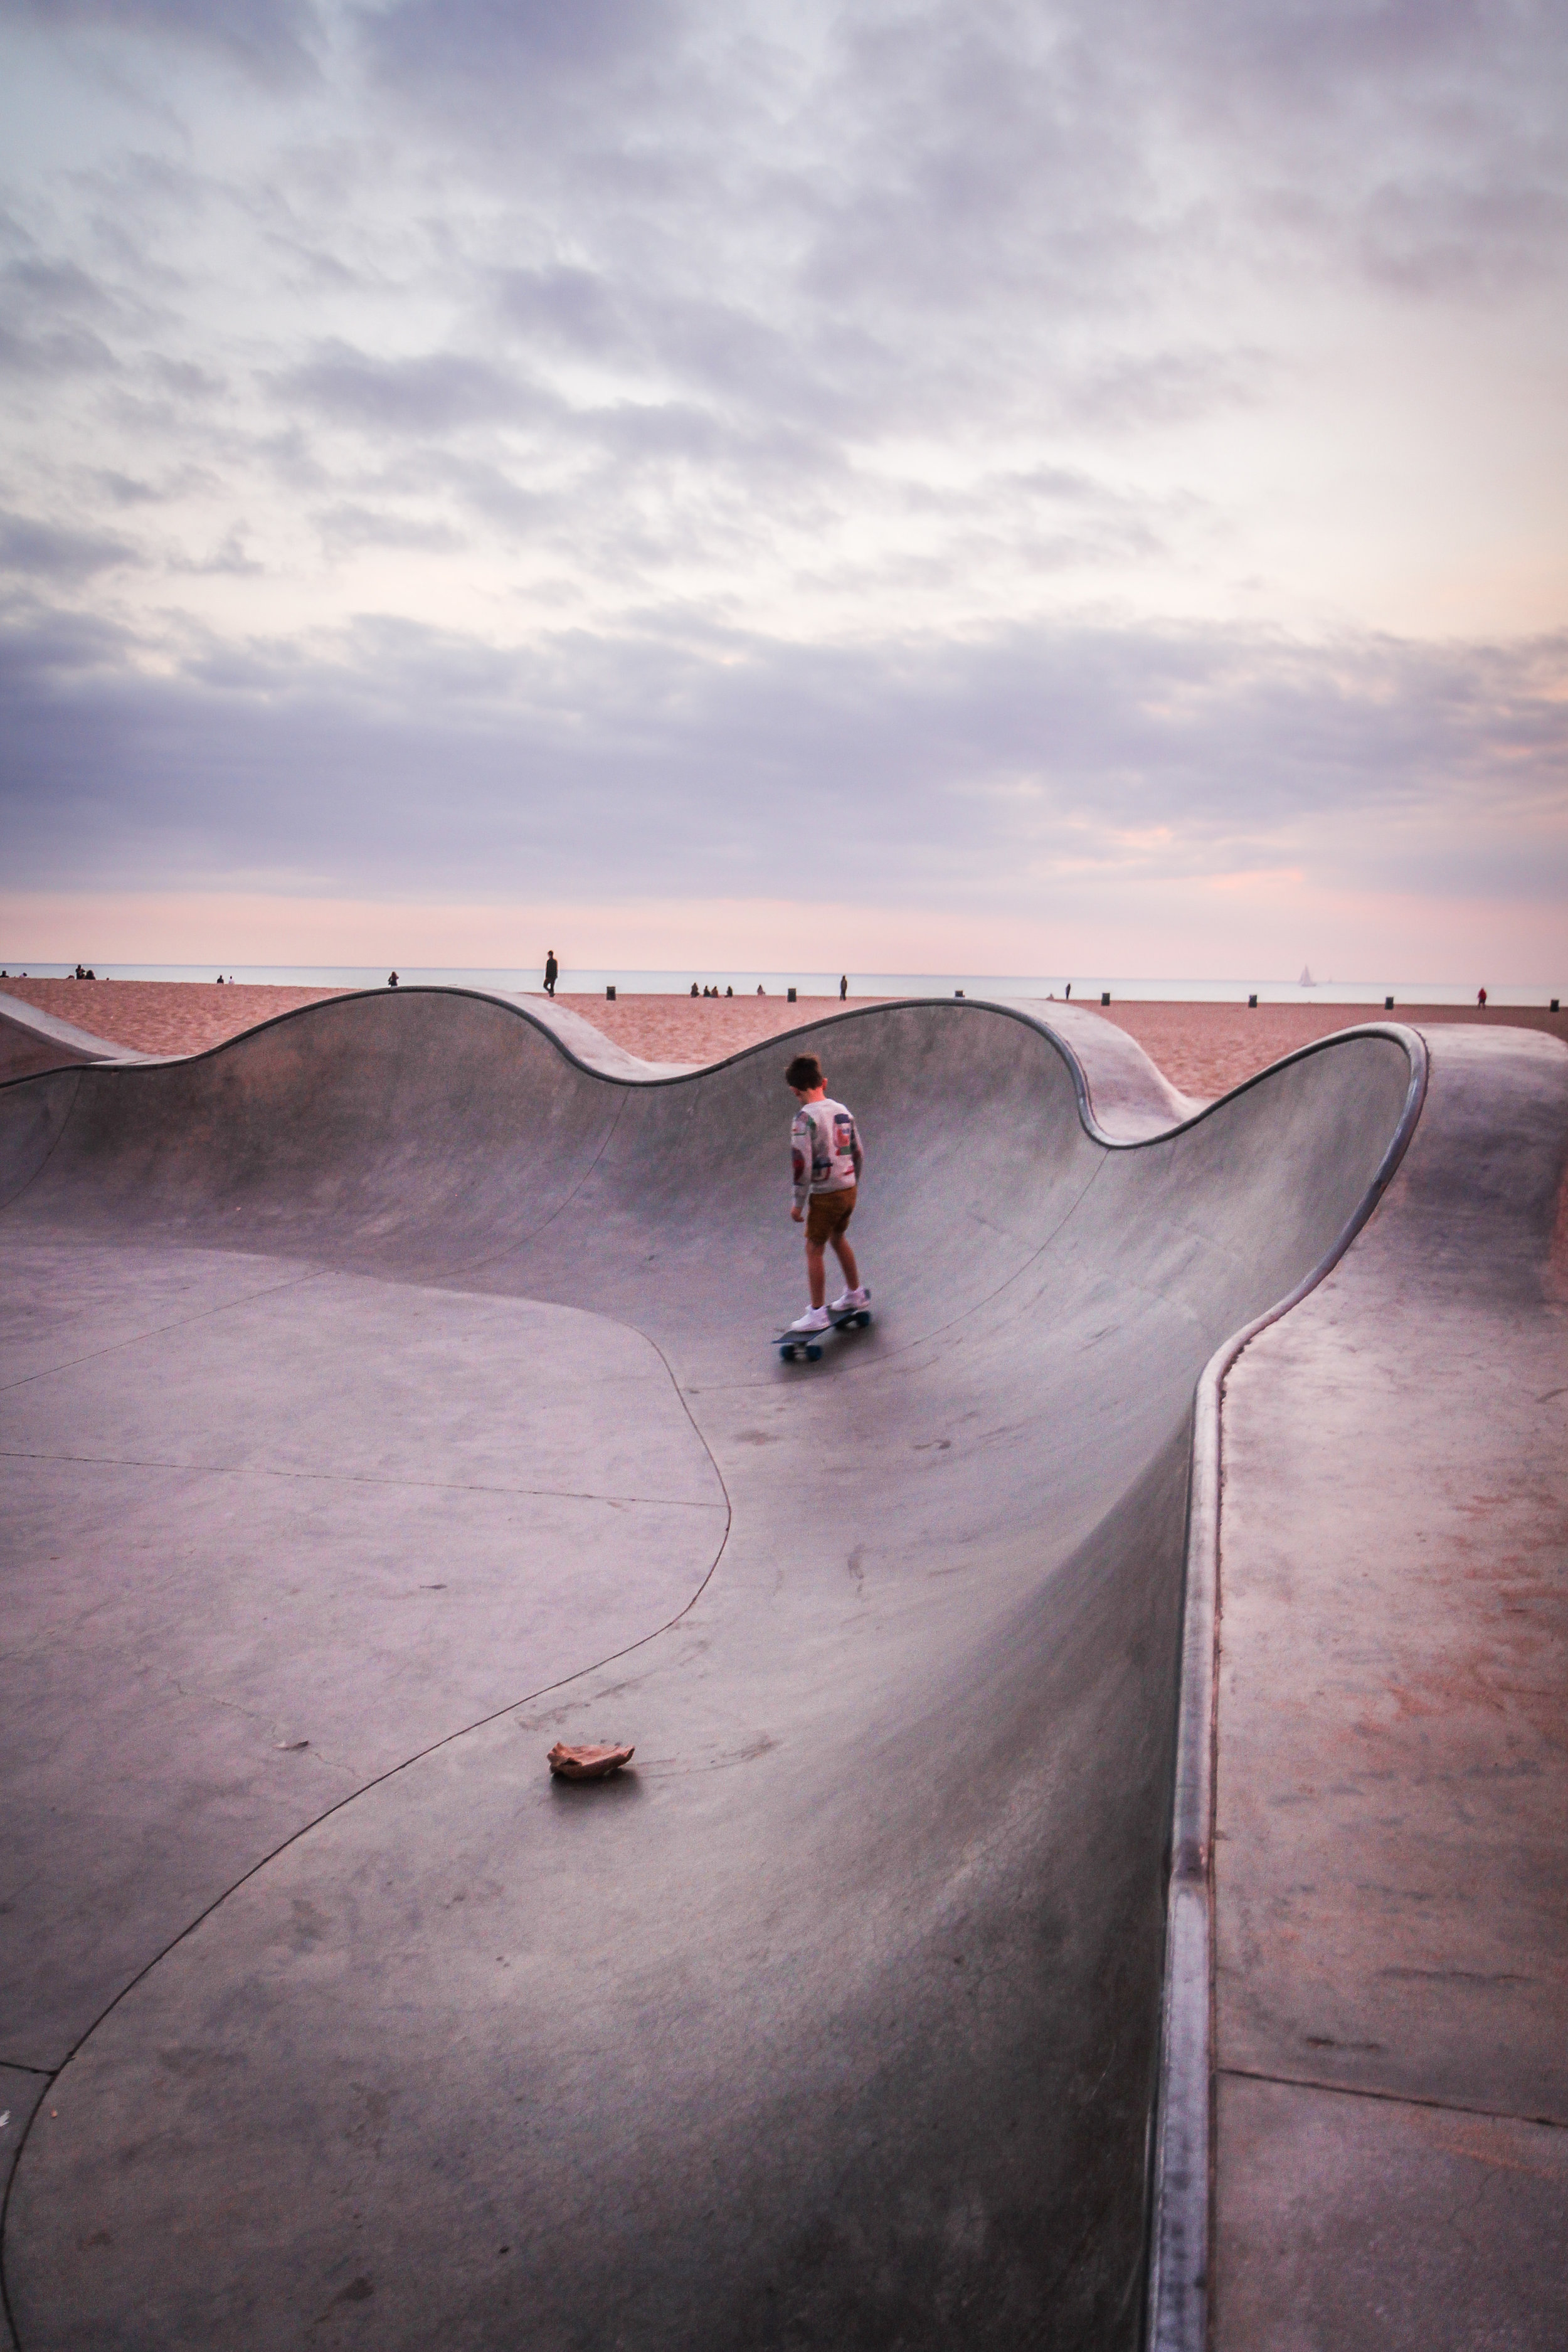 Venice beach skate park